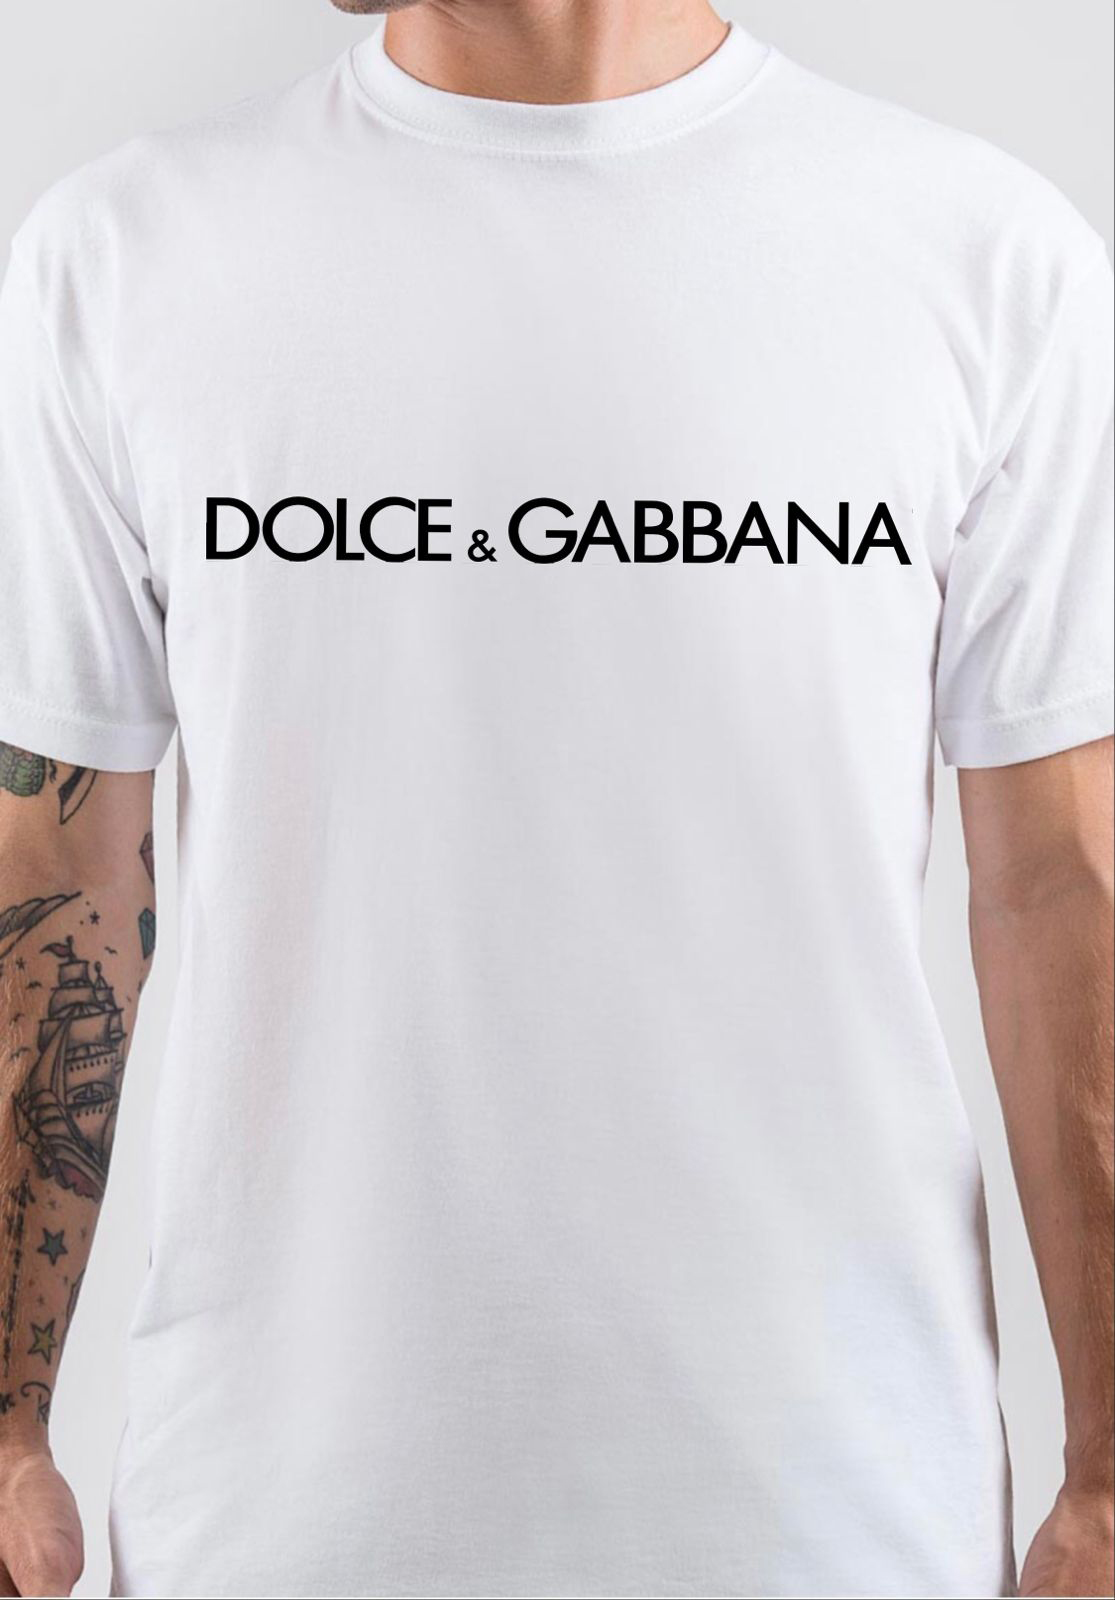 Dolce & Gabbana T-Shirt - Swag Shirts